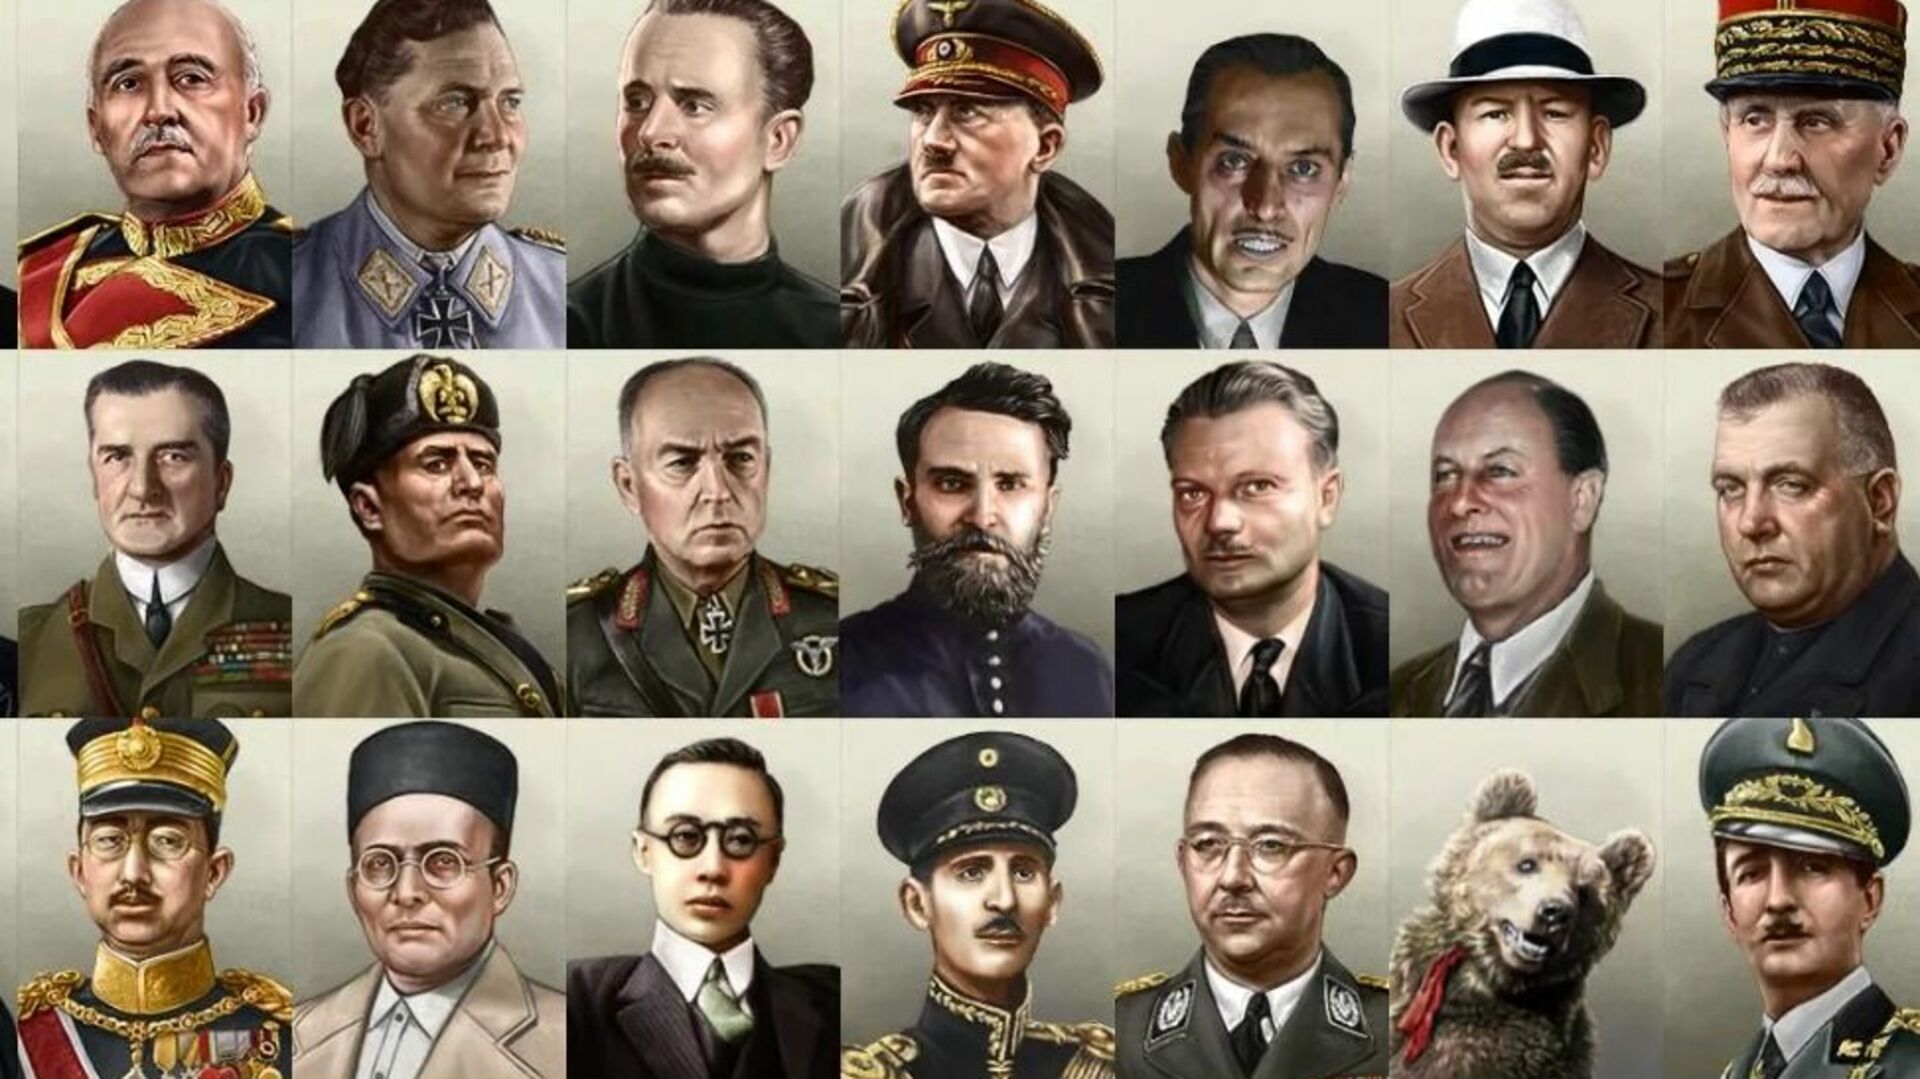 Fell far. Hoi 4 правители. Портрет Сталина hoi4. Hoi4 TNO правители. Сталин hoi 4 портрет.